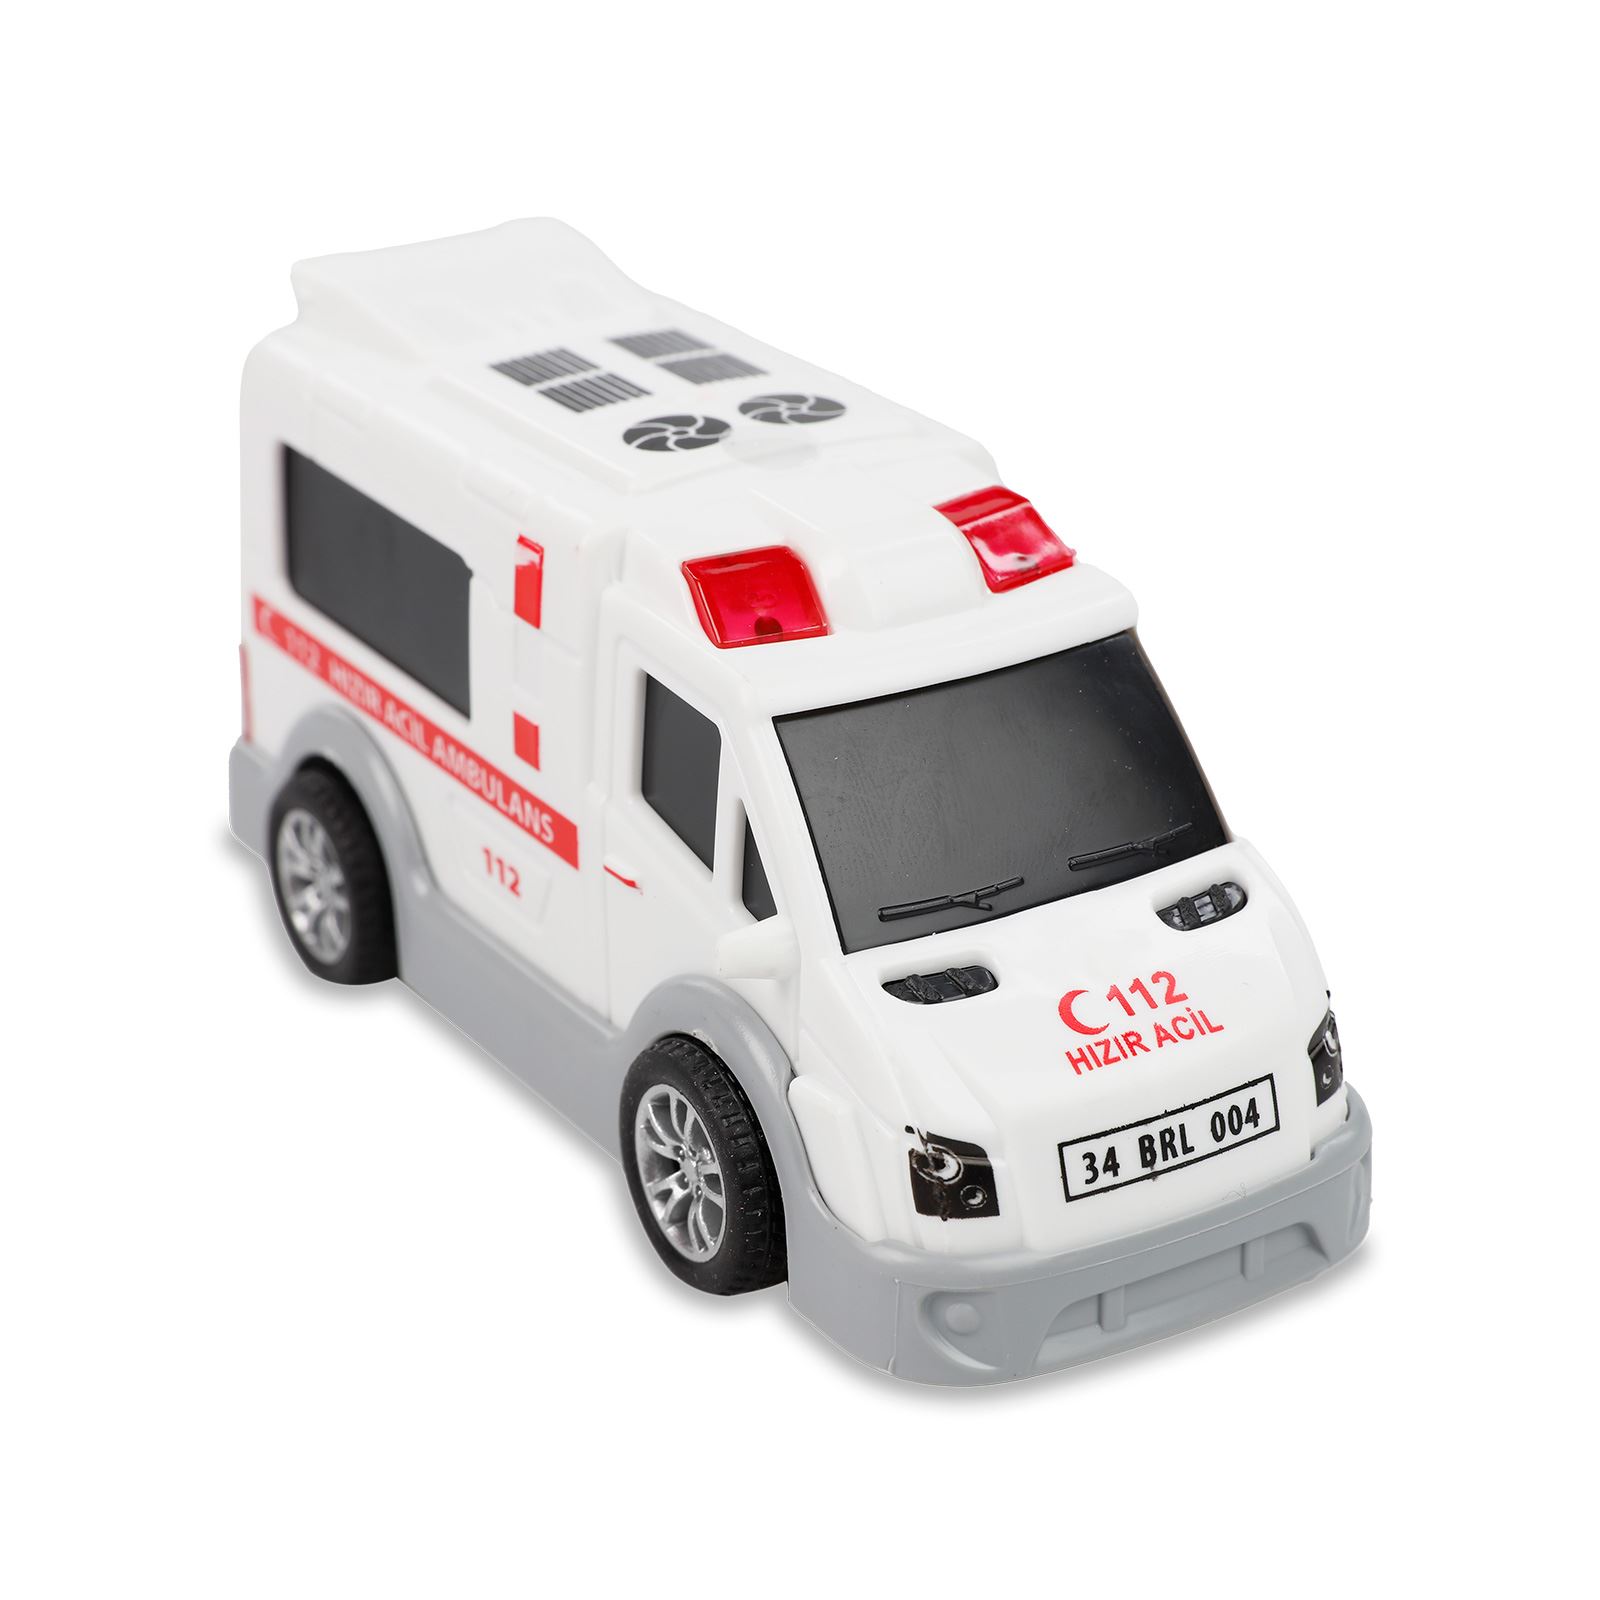 Şehrin Kırılmazları Sürtmeli Ambulans Beyaz